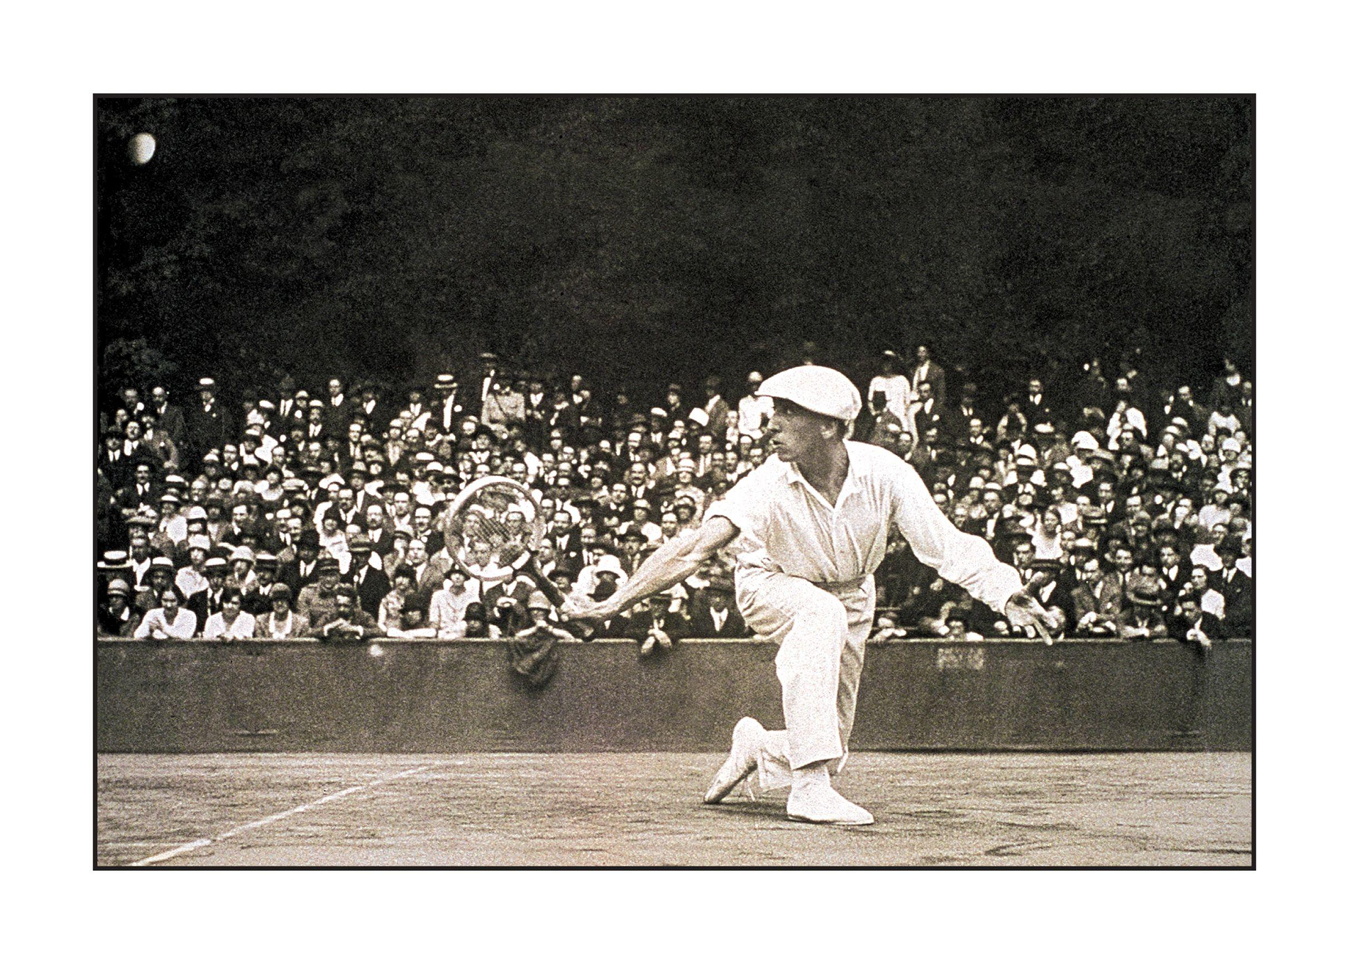 Ingénieur et designeur, René Lacoste (1904-1996) est à l’origine de plusieurs inventions dans le monde du tennis. Il fut aussi l’un des quatre « Mousquetaires », surnom donné à l’équipe de France victorieuse de la Coupe Davis de 1927 à 1932.